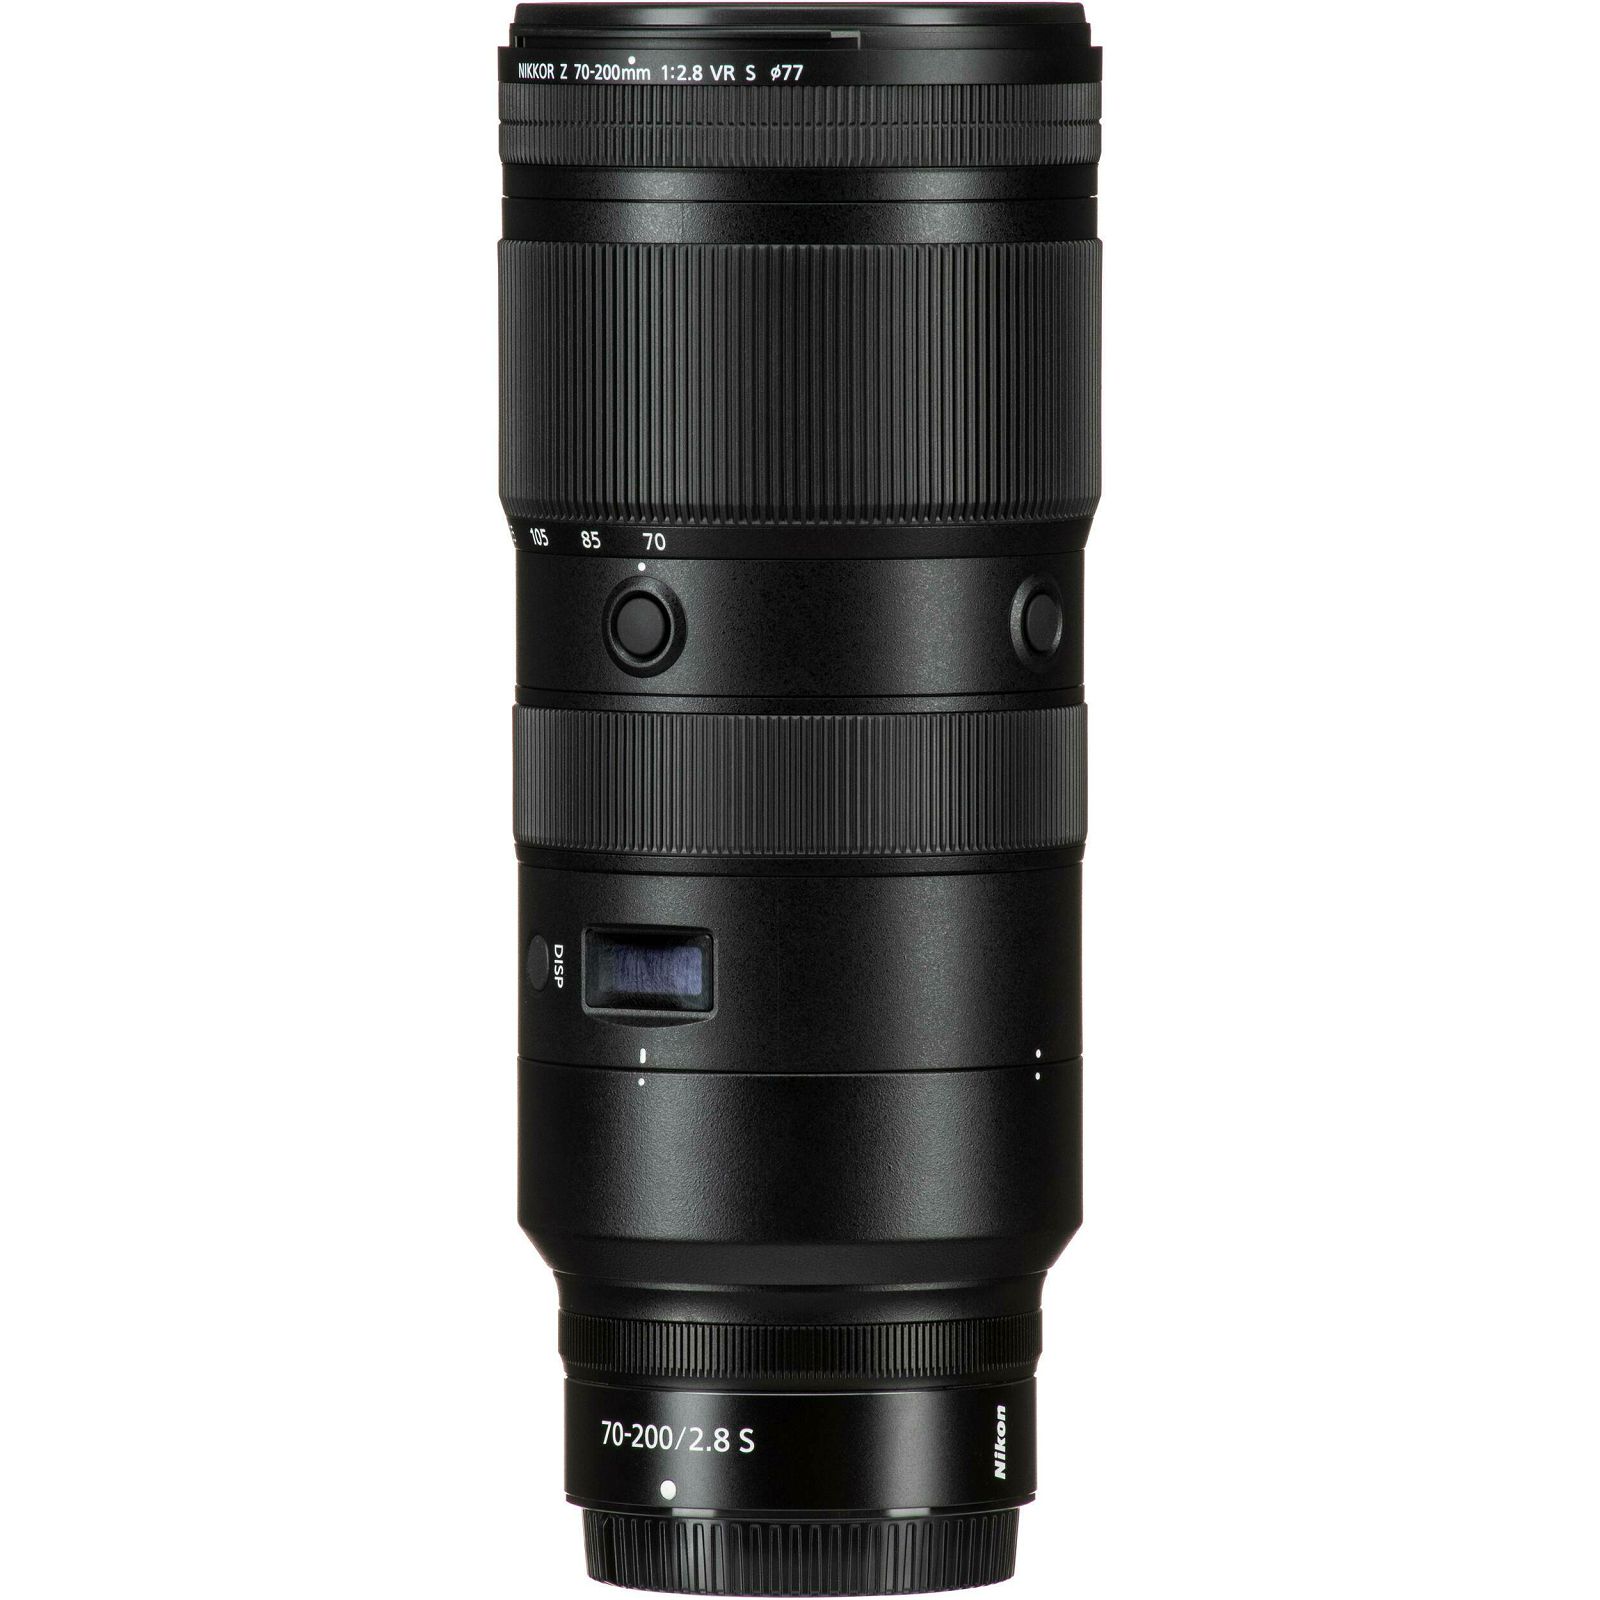 Nikon Z 70-200mm f/2.8 VR S Nikkor telefoto objektiv (JMA709DA)